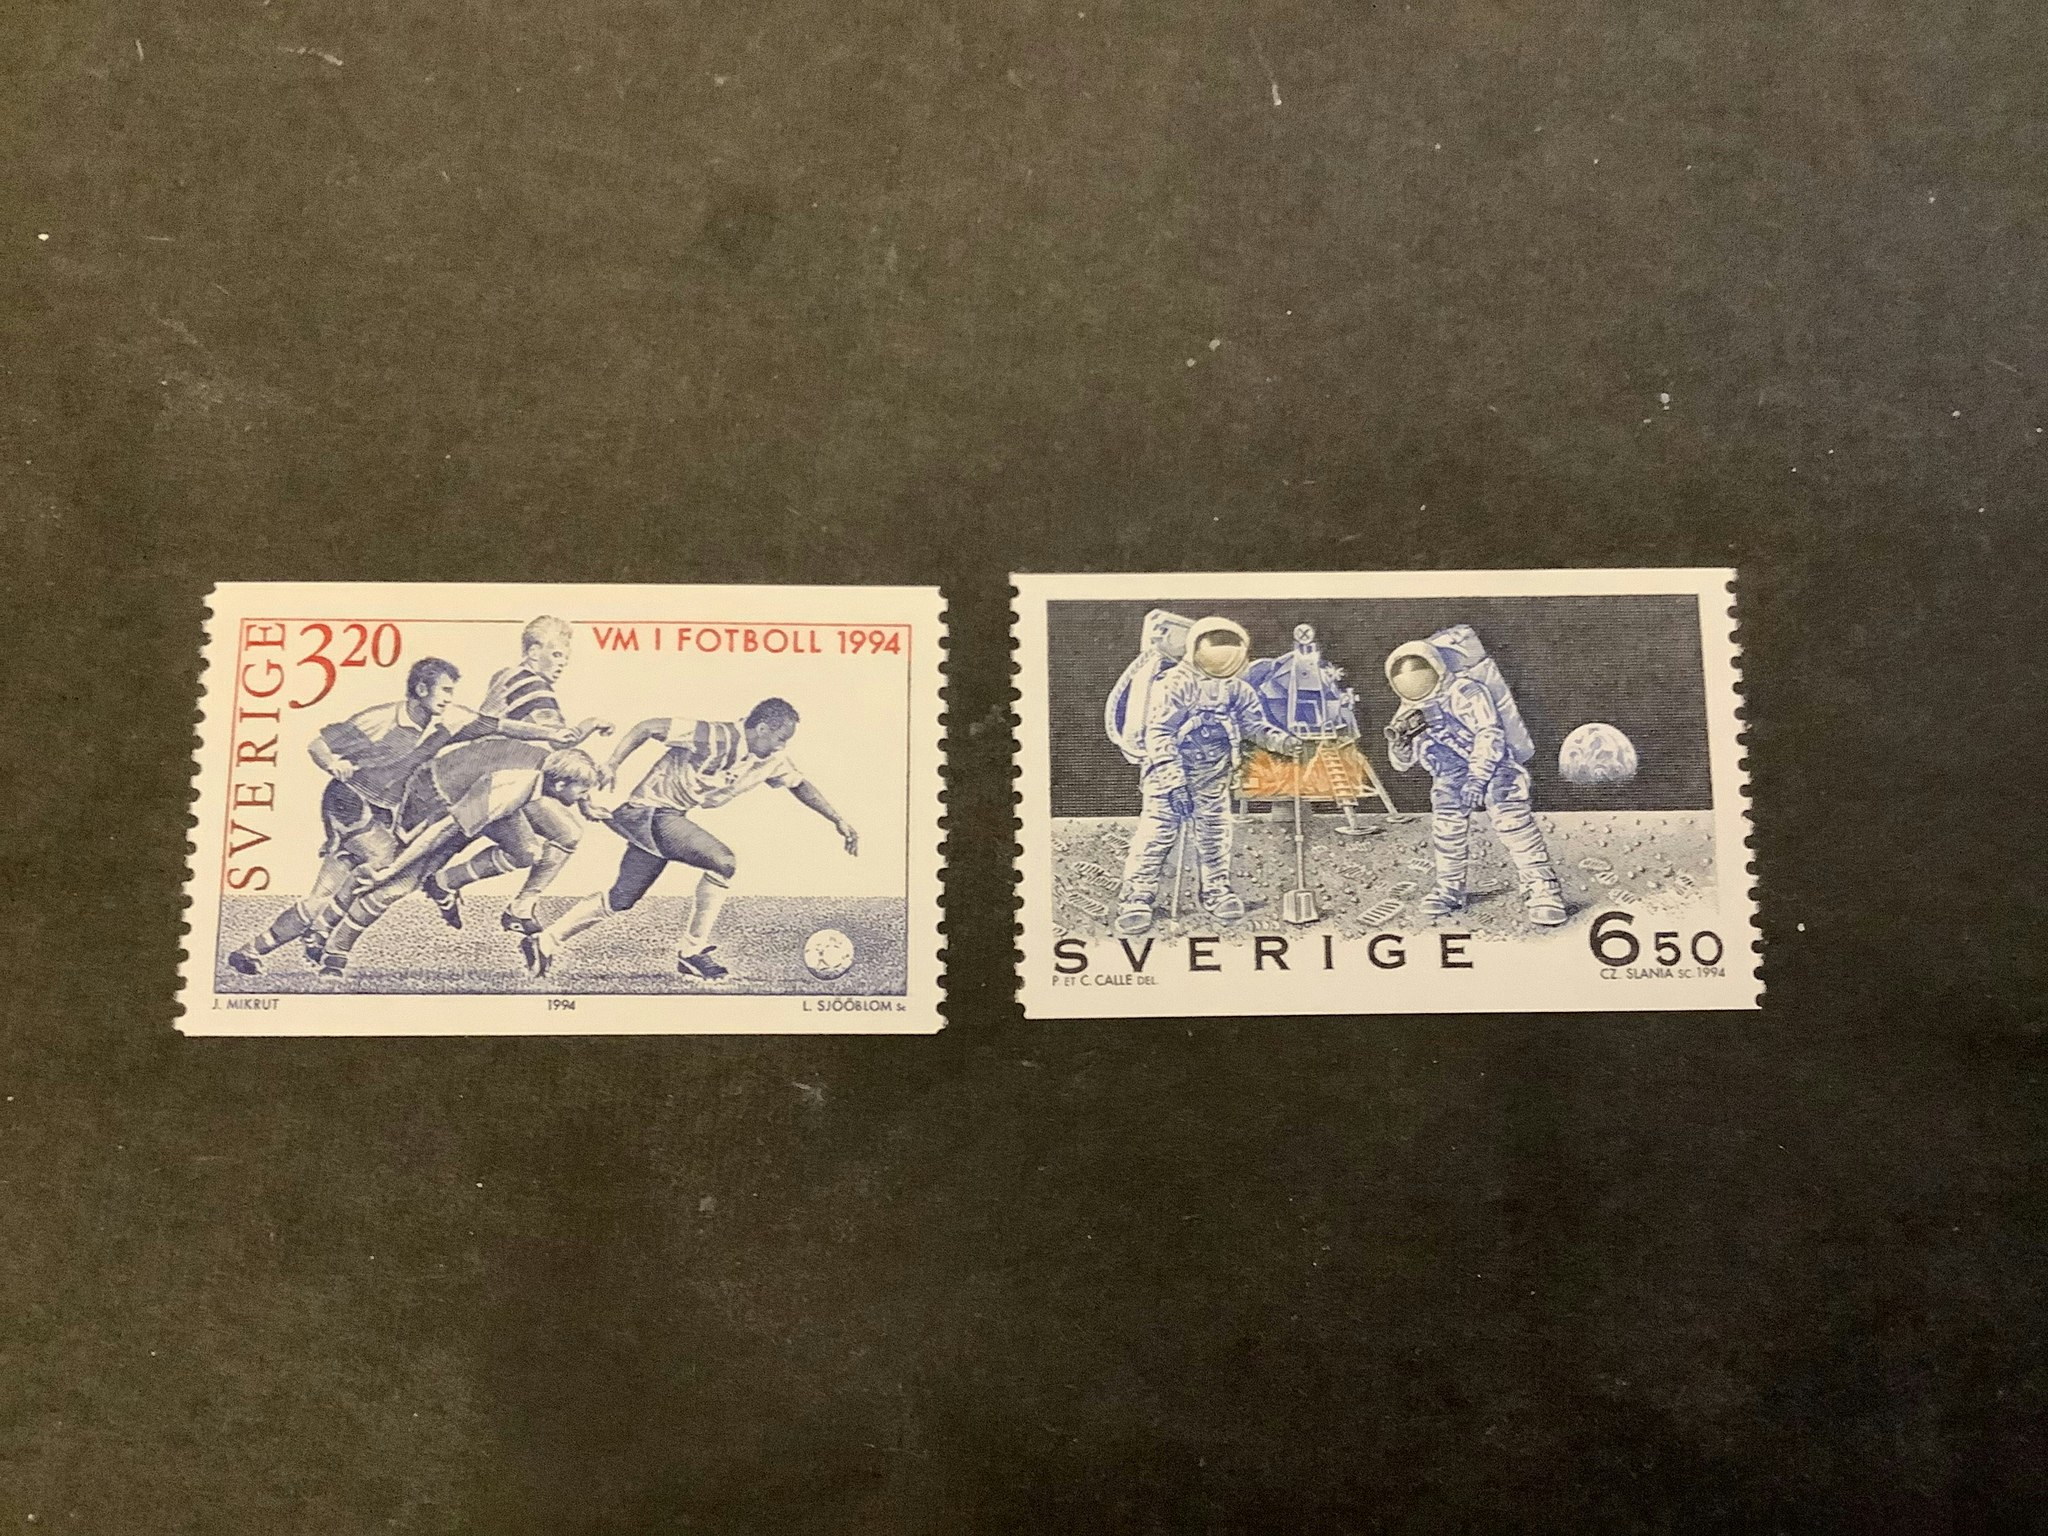 VM i fotboll och svensk teknik på månen facit nr 1840-1841 postfrisk serie